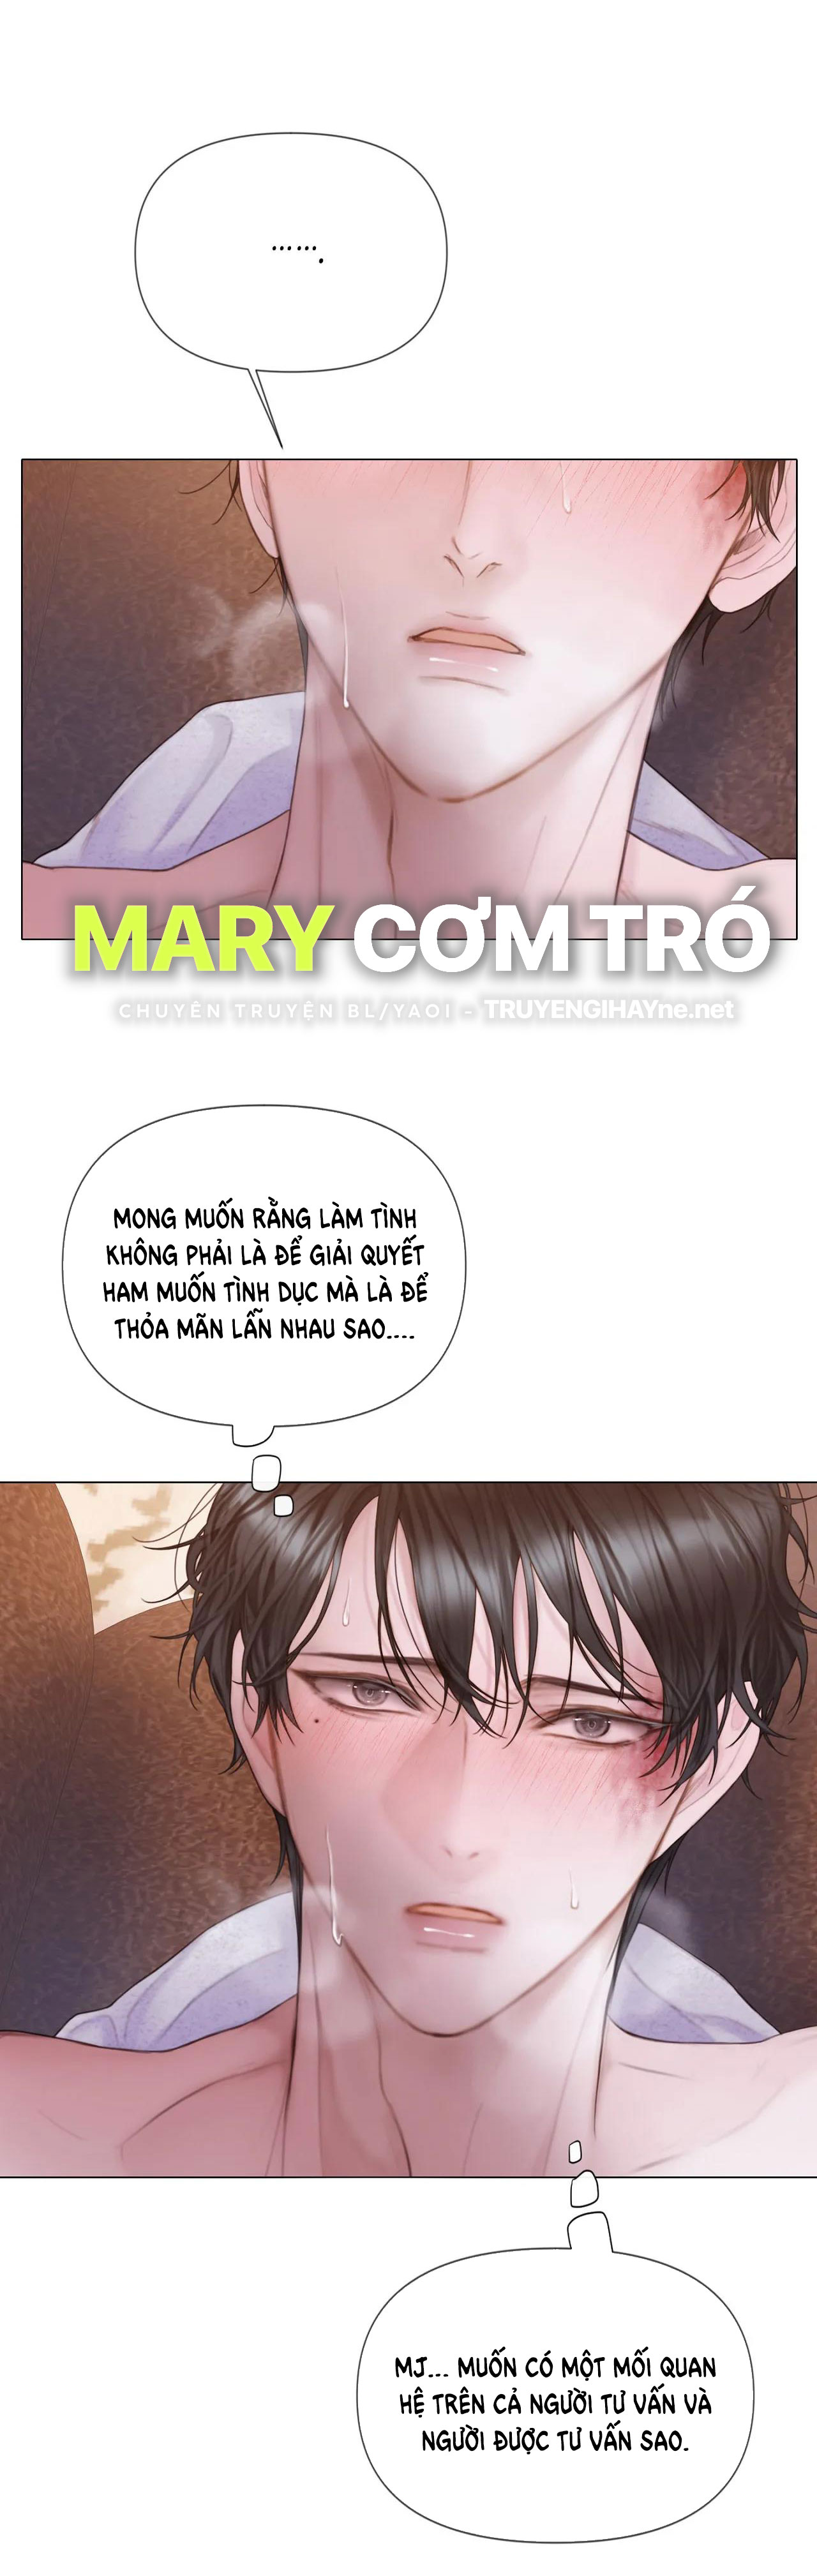 [18+] Mary Jane Chương 19 1 Trang 20